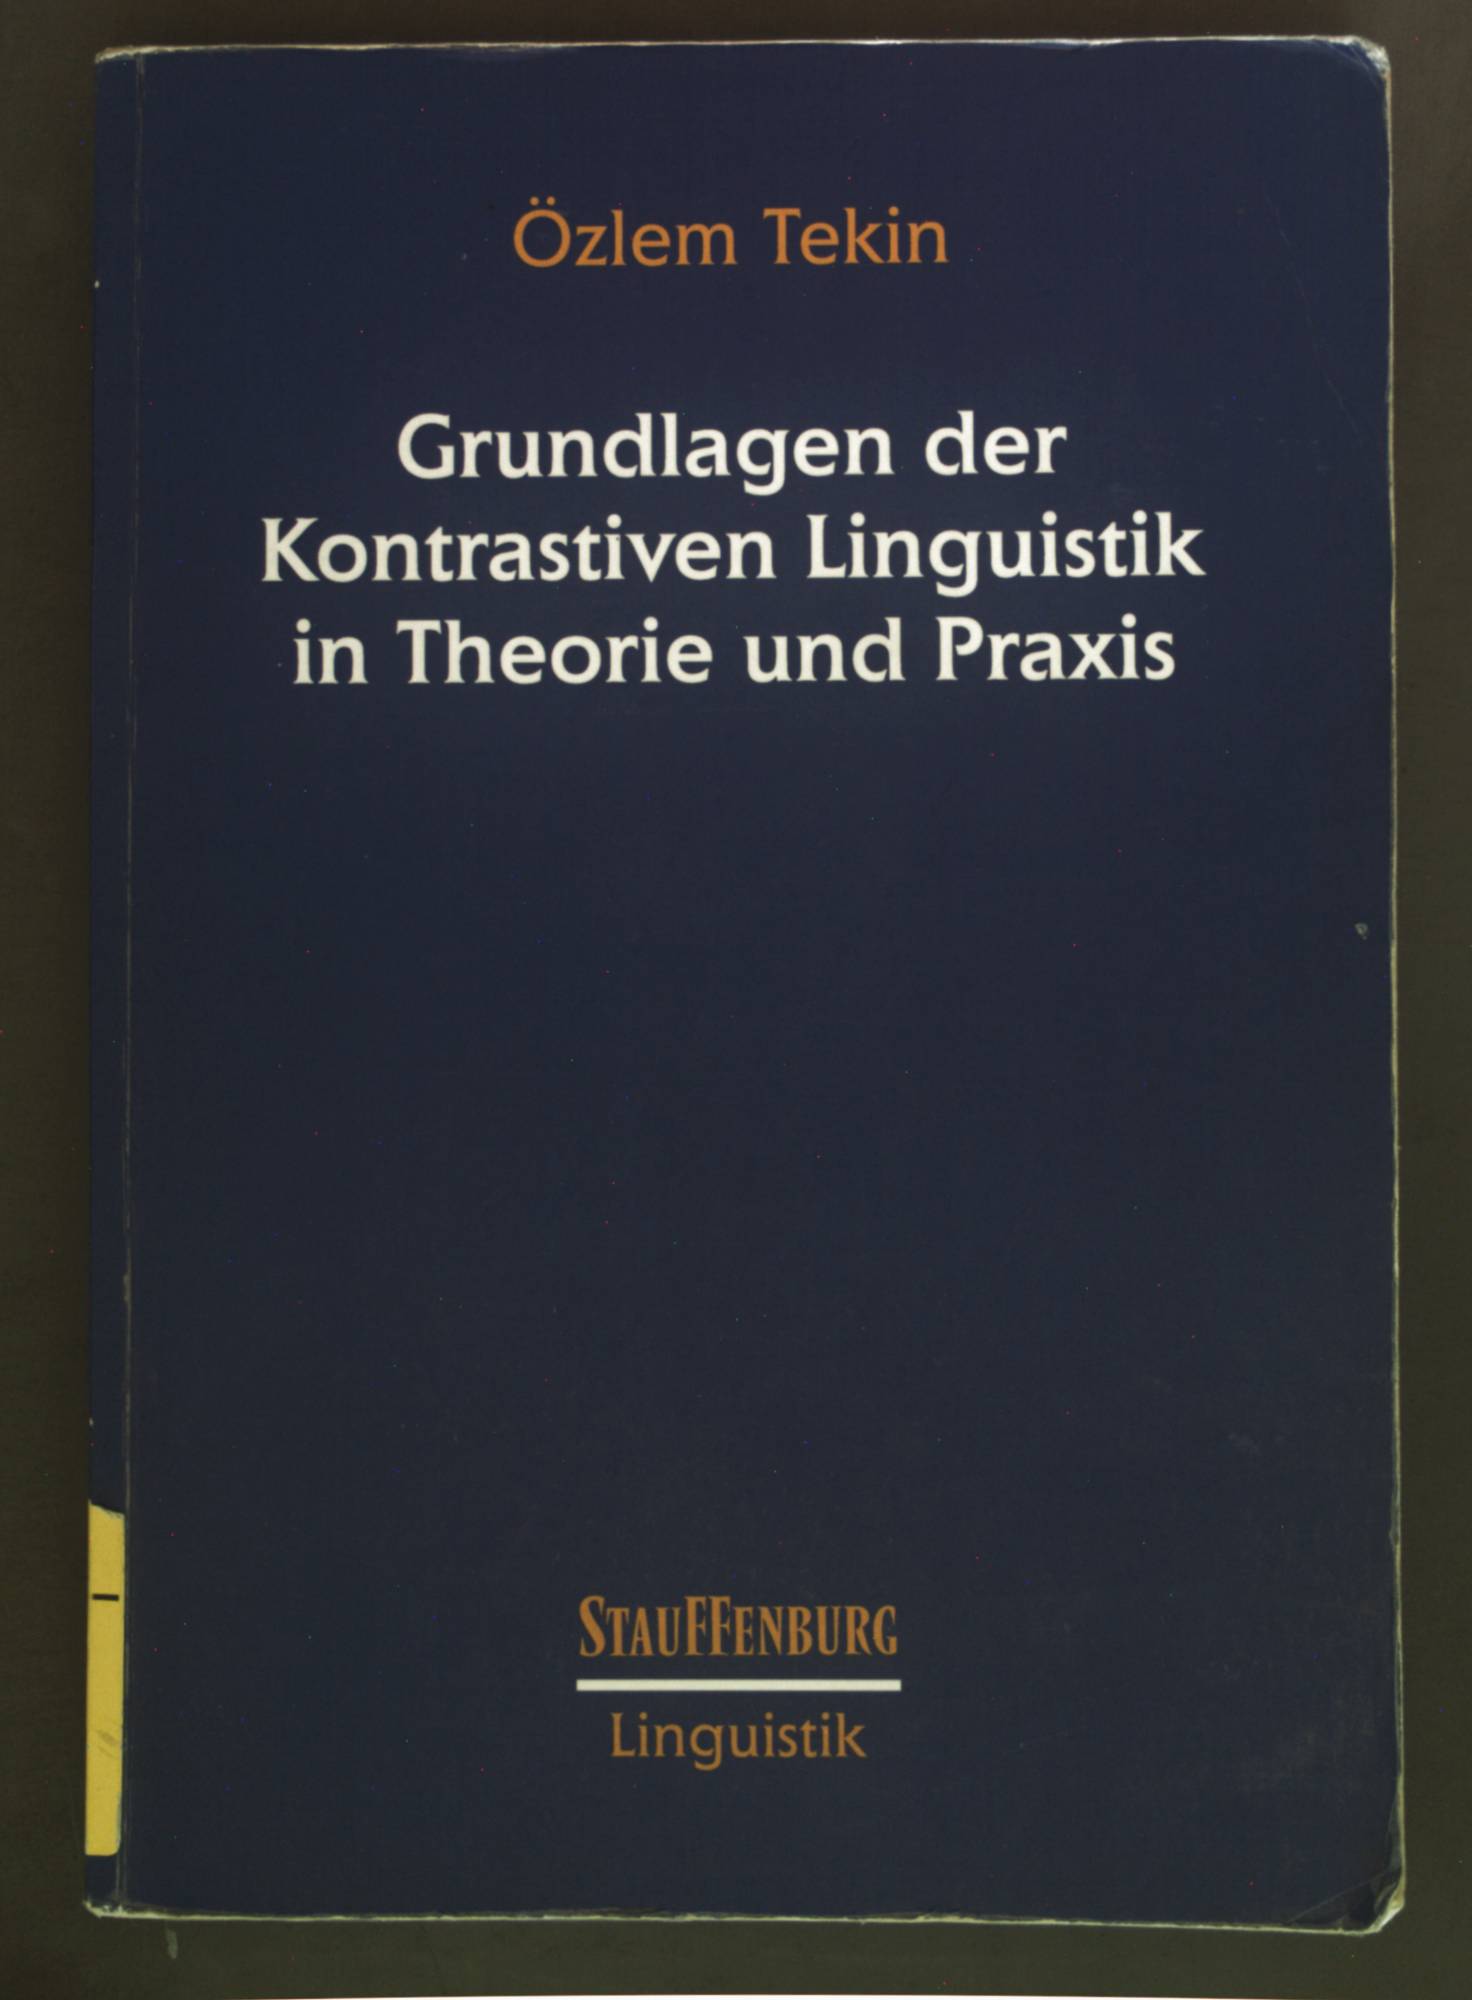 Grundlagen der kontrastiven Linguistik in Theorie und Praxis. Stauffenburg Linguistik ; Bd. 64 - Tekin, Özlem